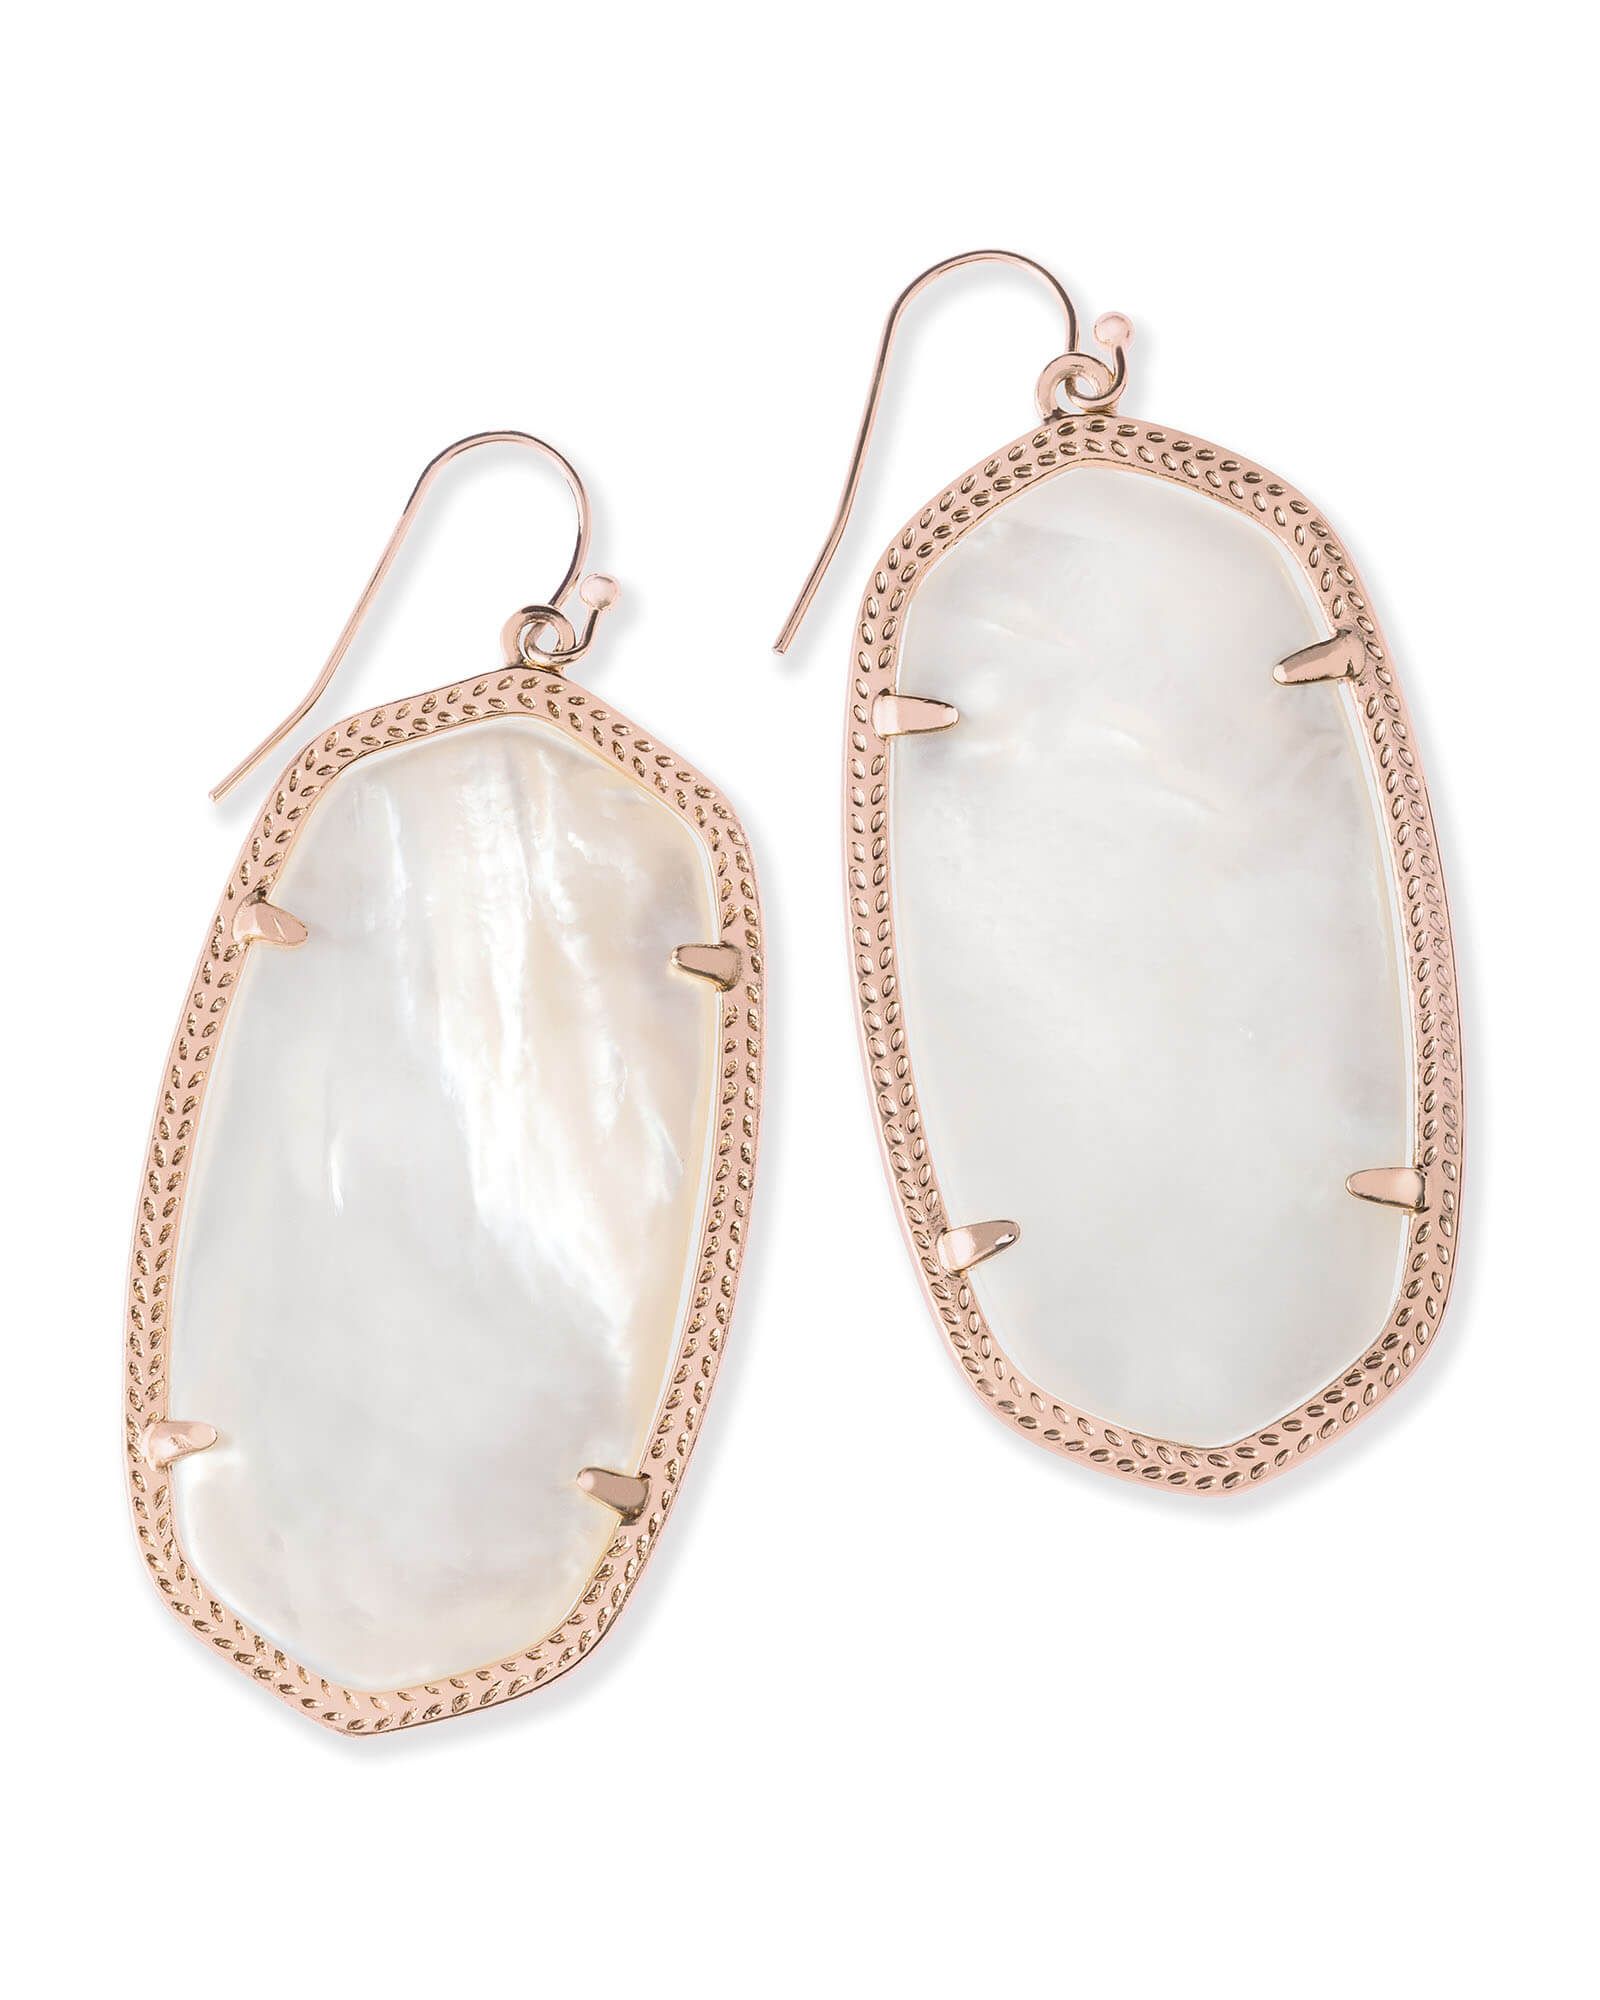 Danielle Rose Gold Earrings in Ivory Pearl | Kendra Scott